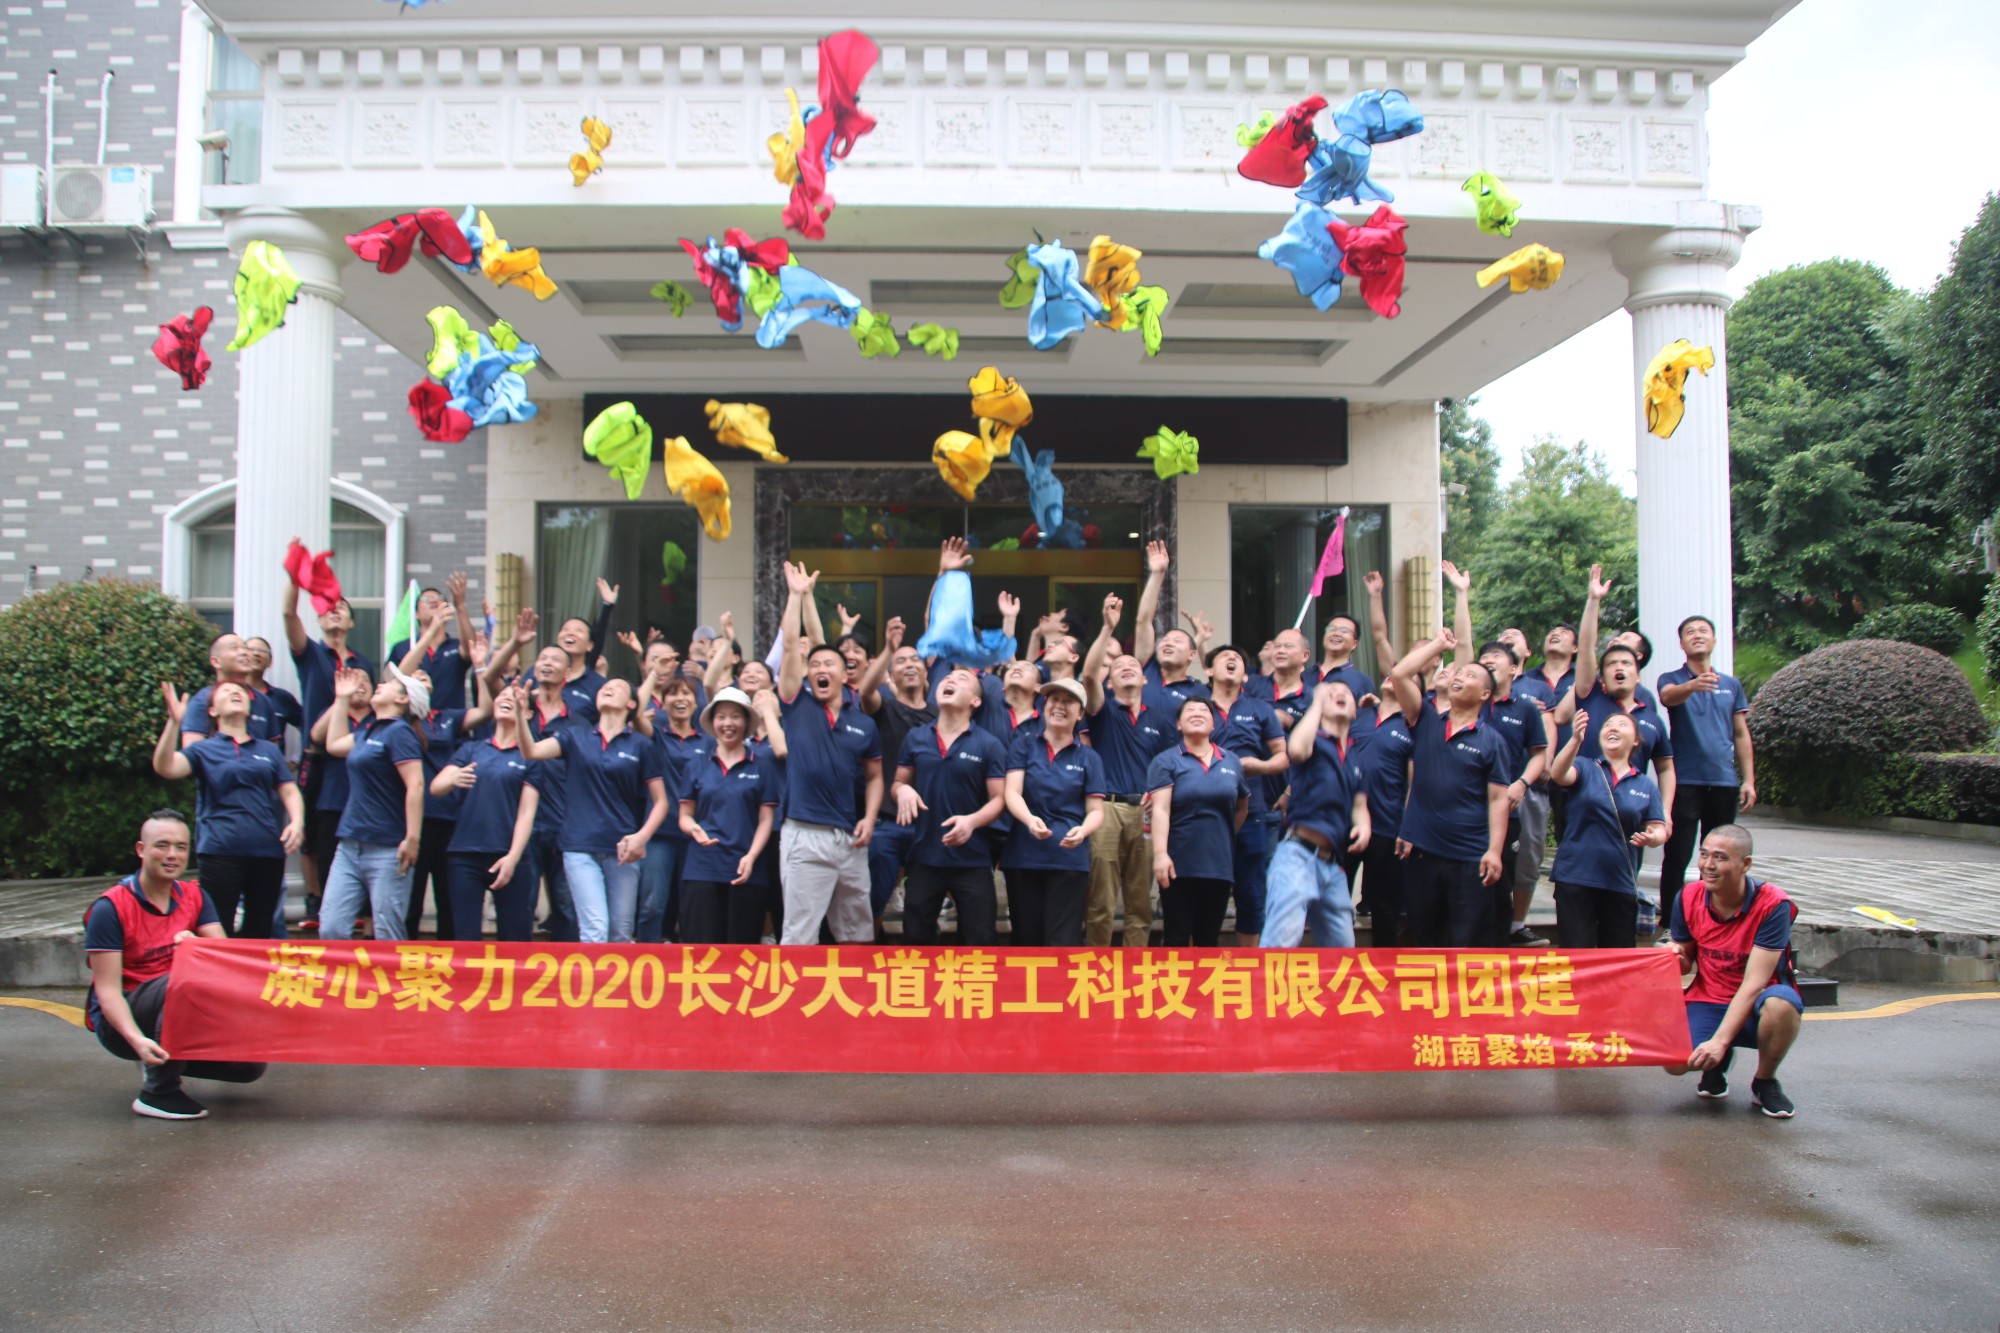 Grande equipe de construção --- fabricante de Alternador Changsha Nachuan